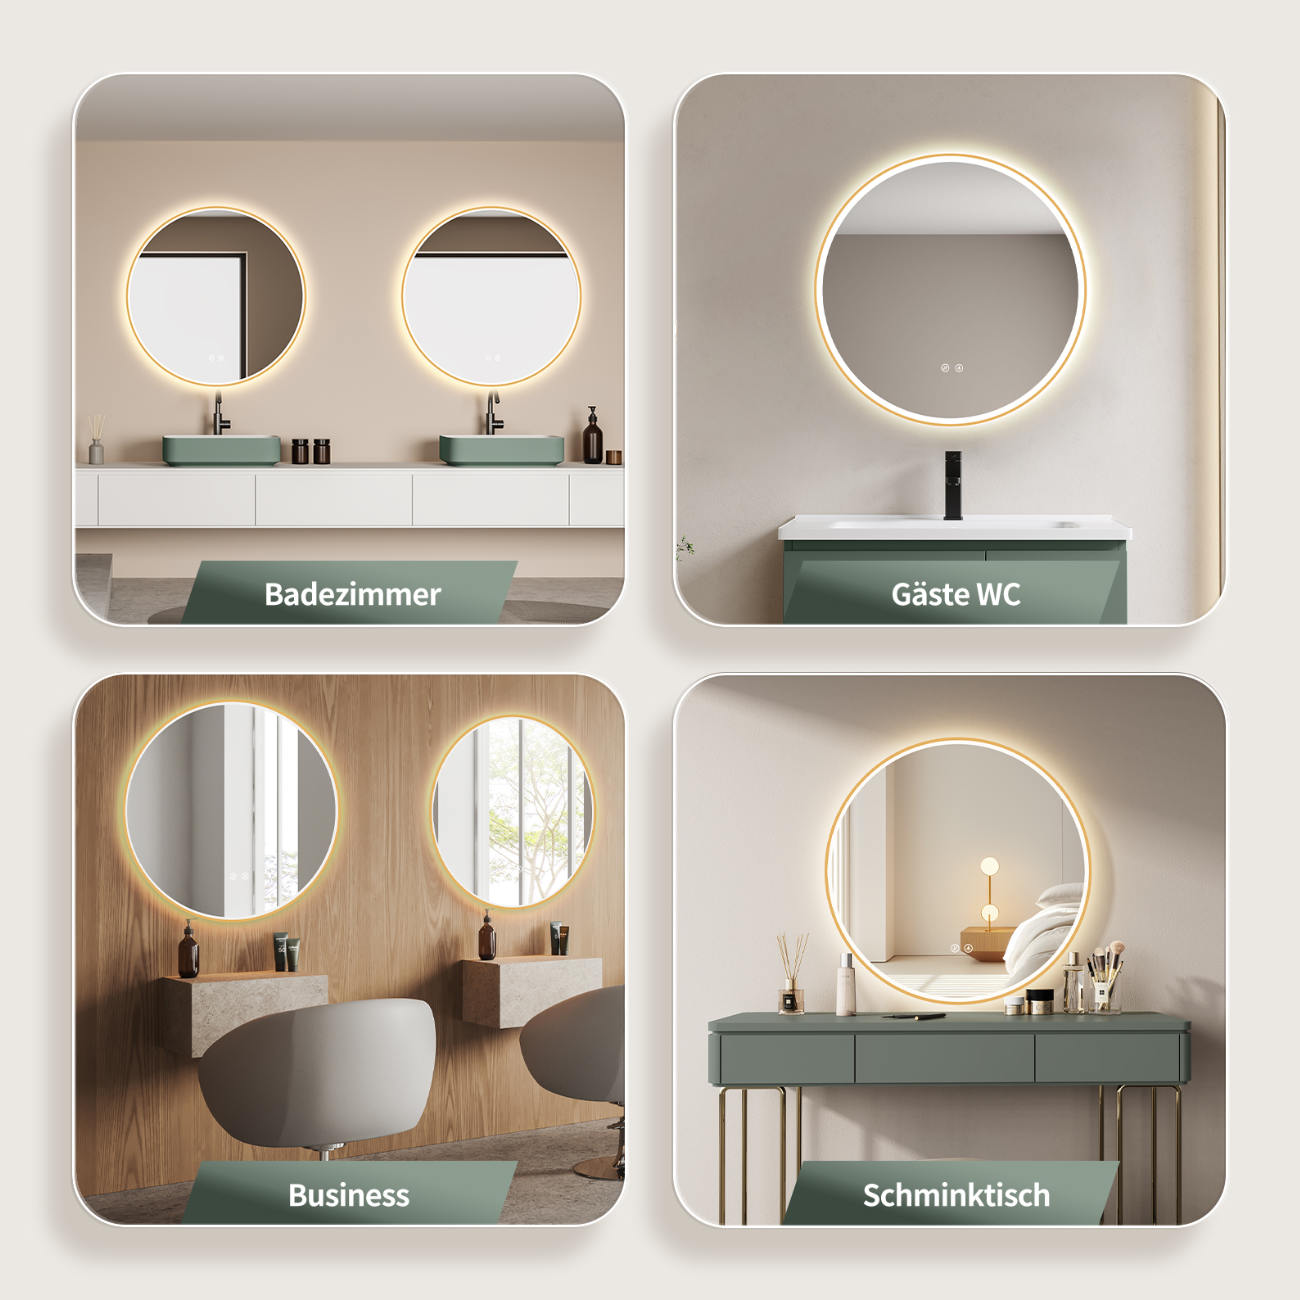 LED Badspiegel: Lichtwechsel, runder Design-Spiegel, Antibeschlag-Funktion, Gold-Metallrahmen